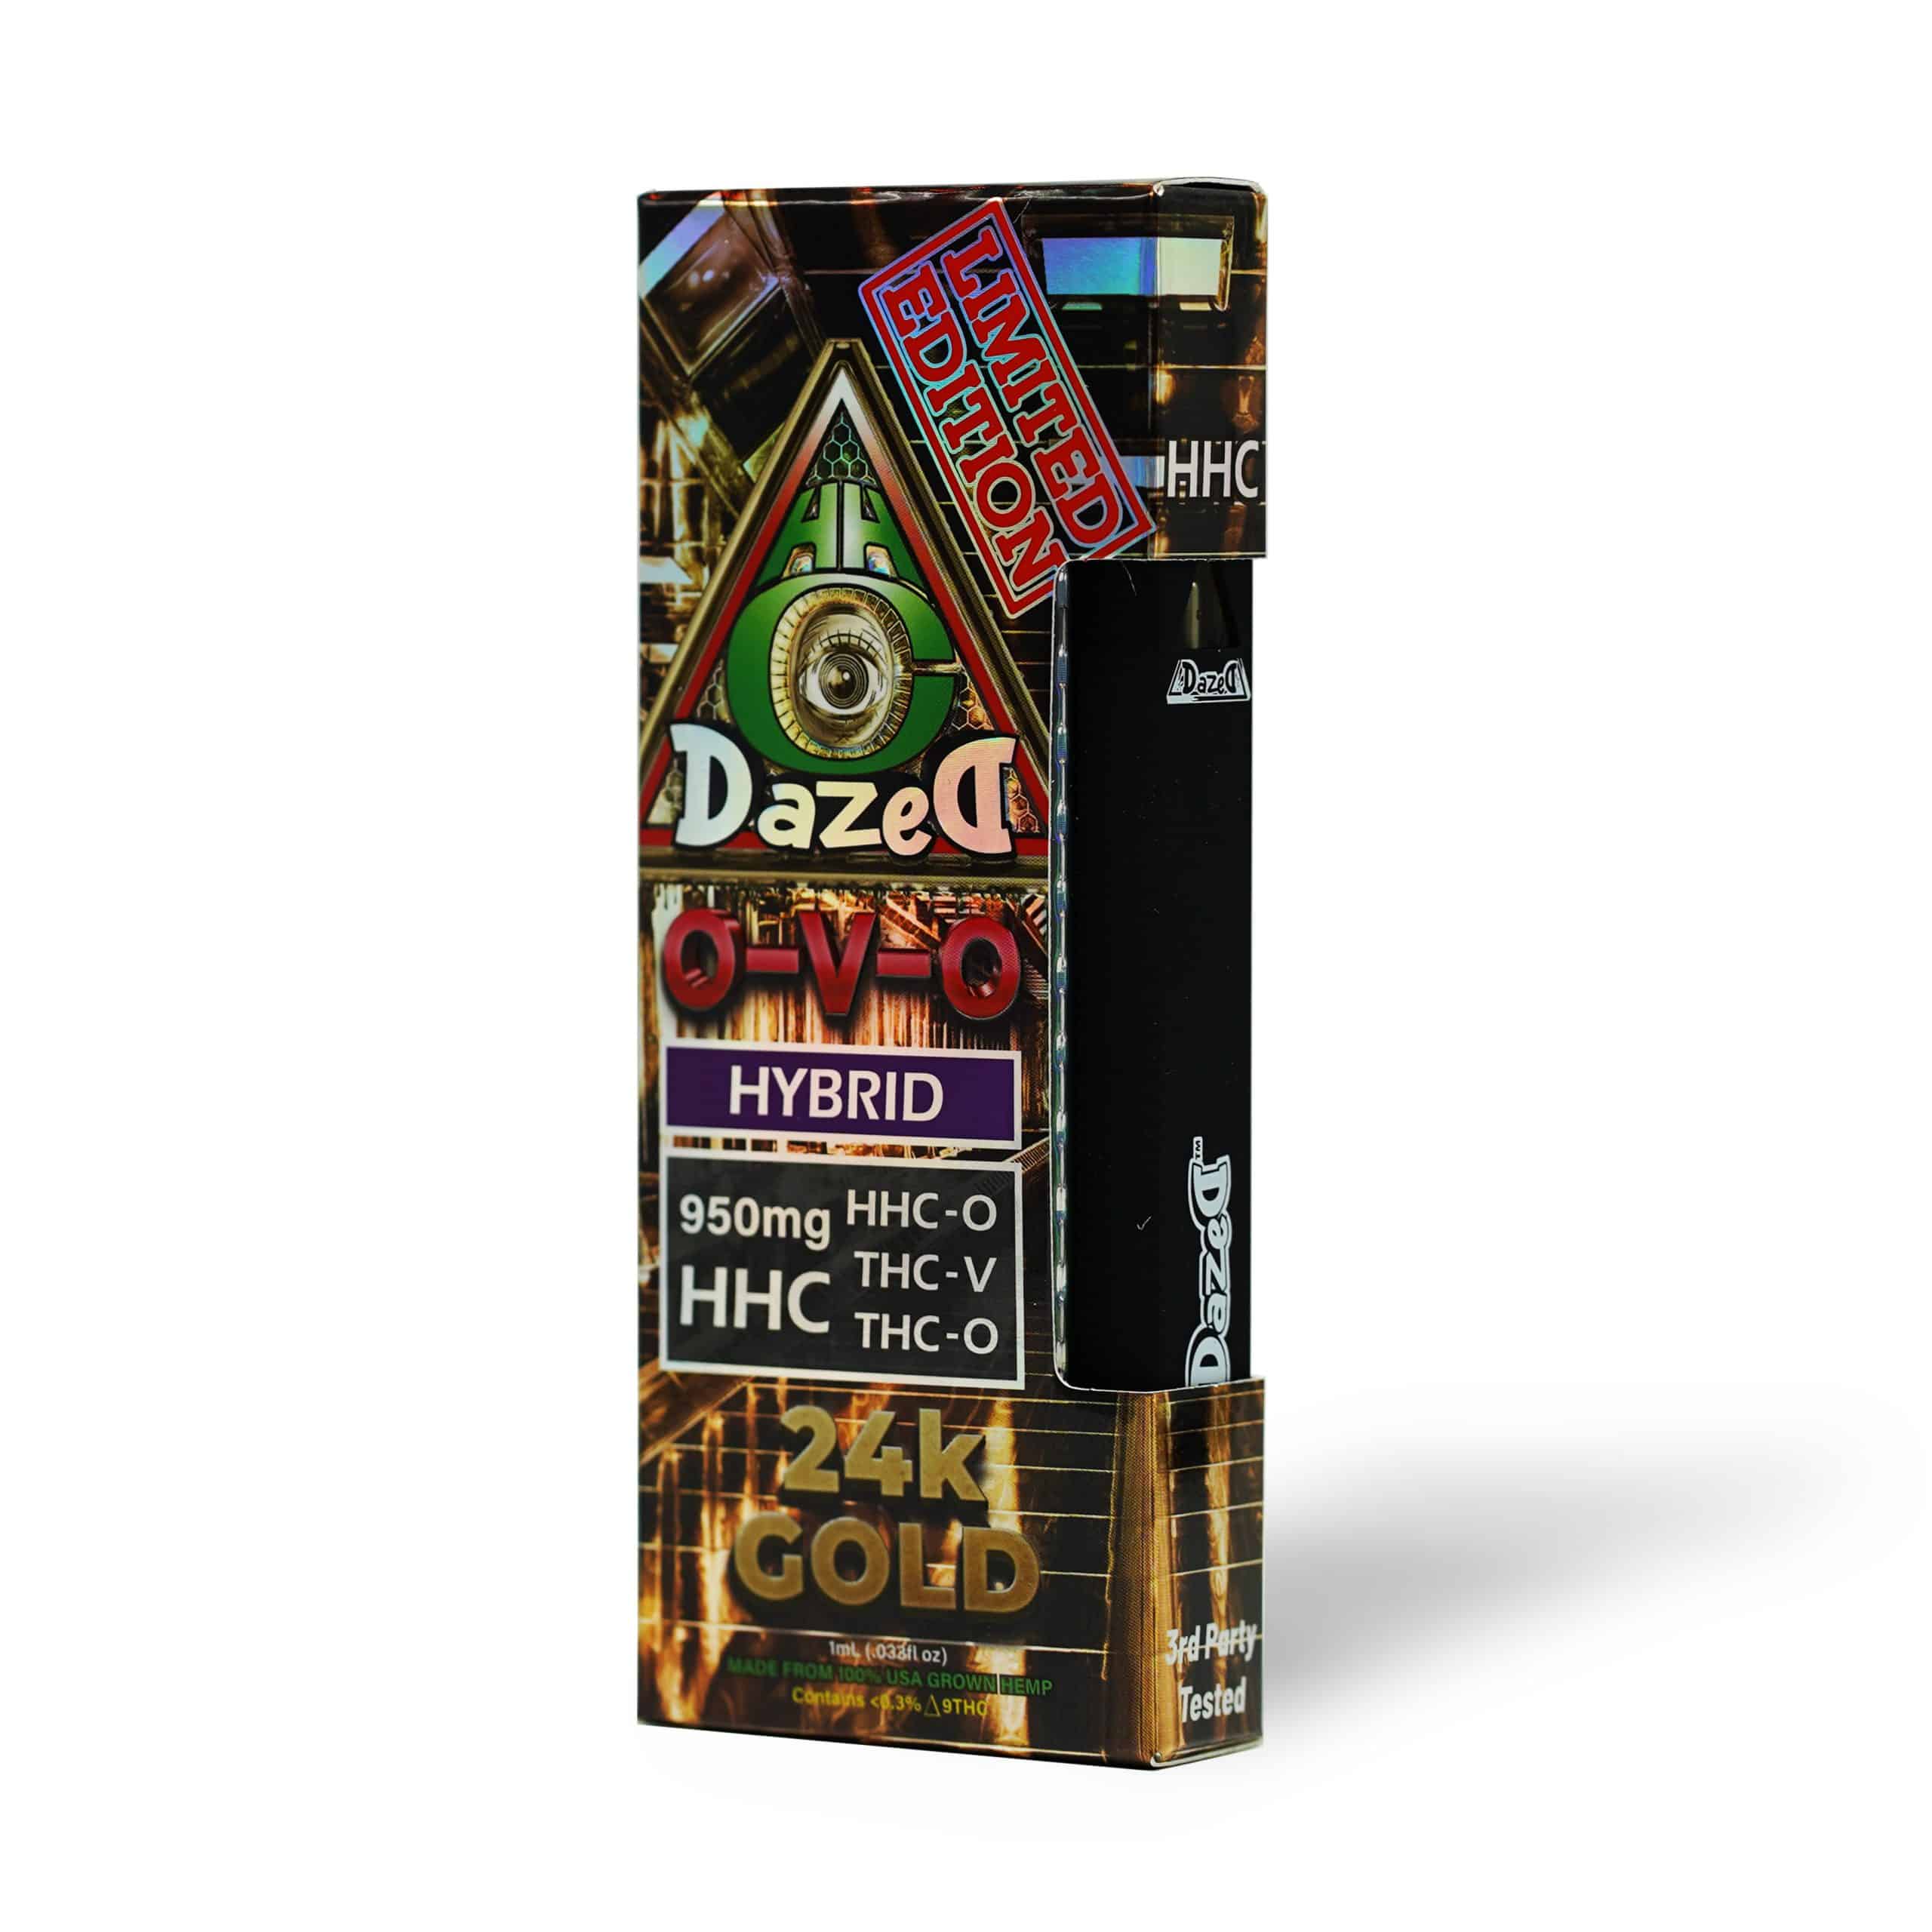 DazeD8 24k Gold HHC-O + THCV + THC-O Disposable (1g) Best Price